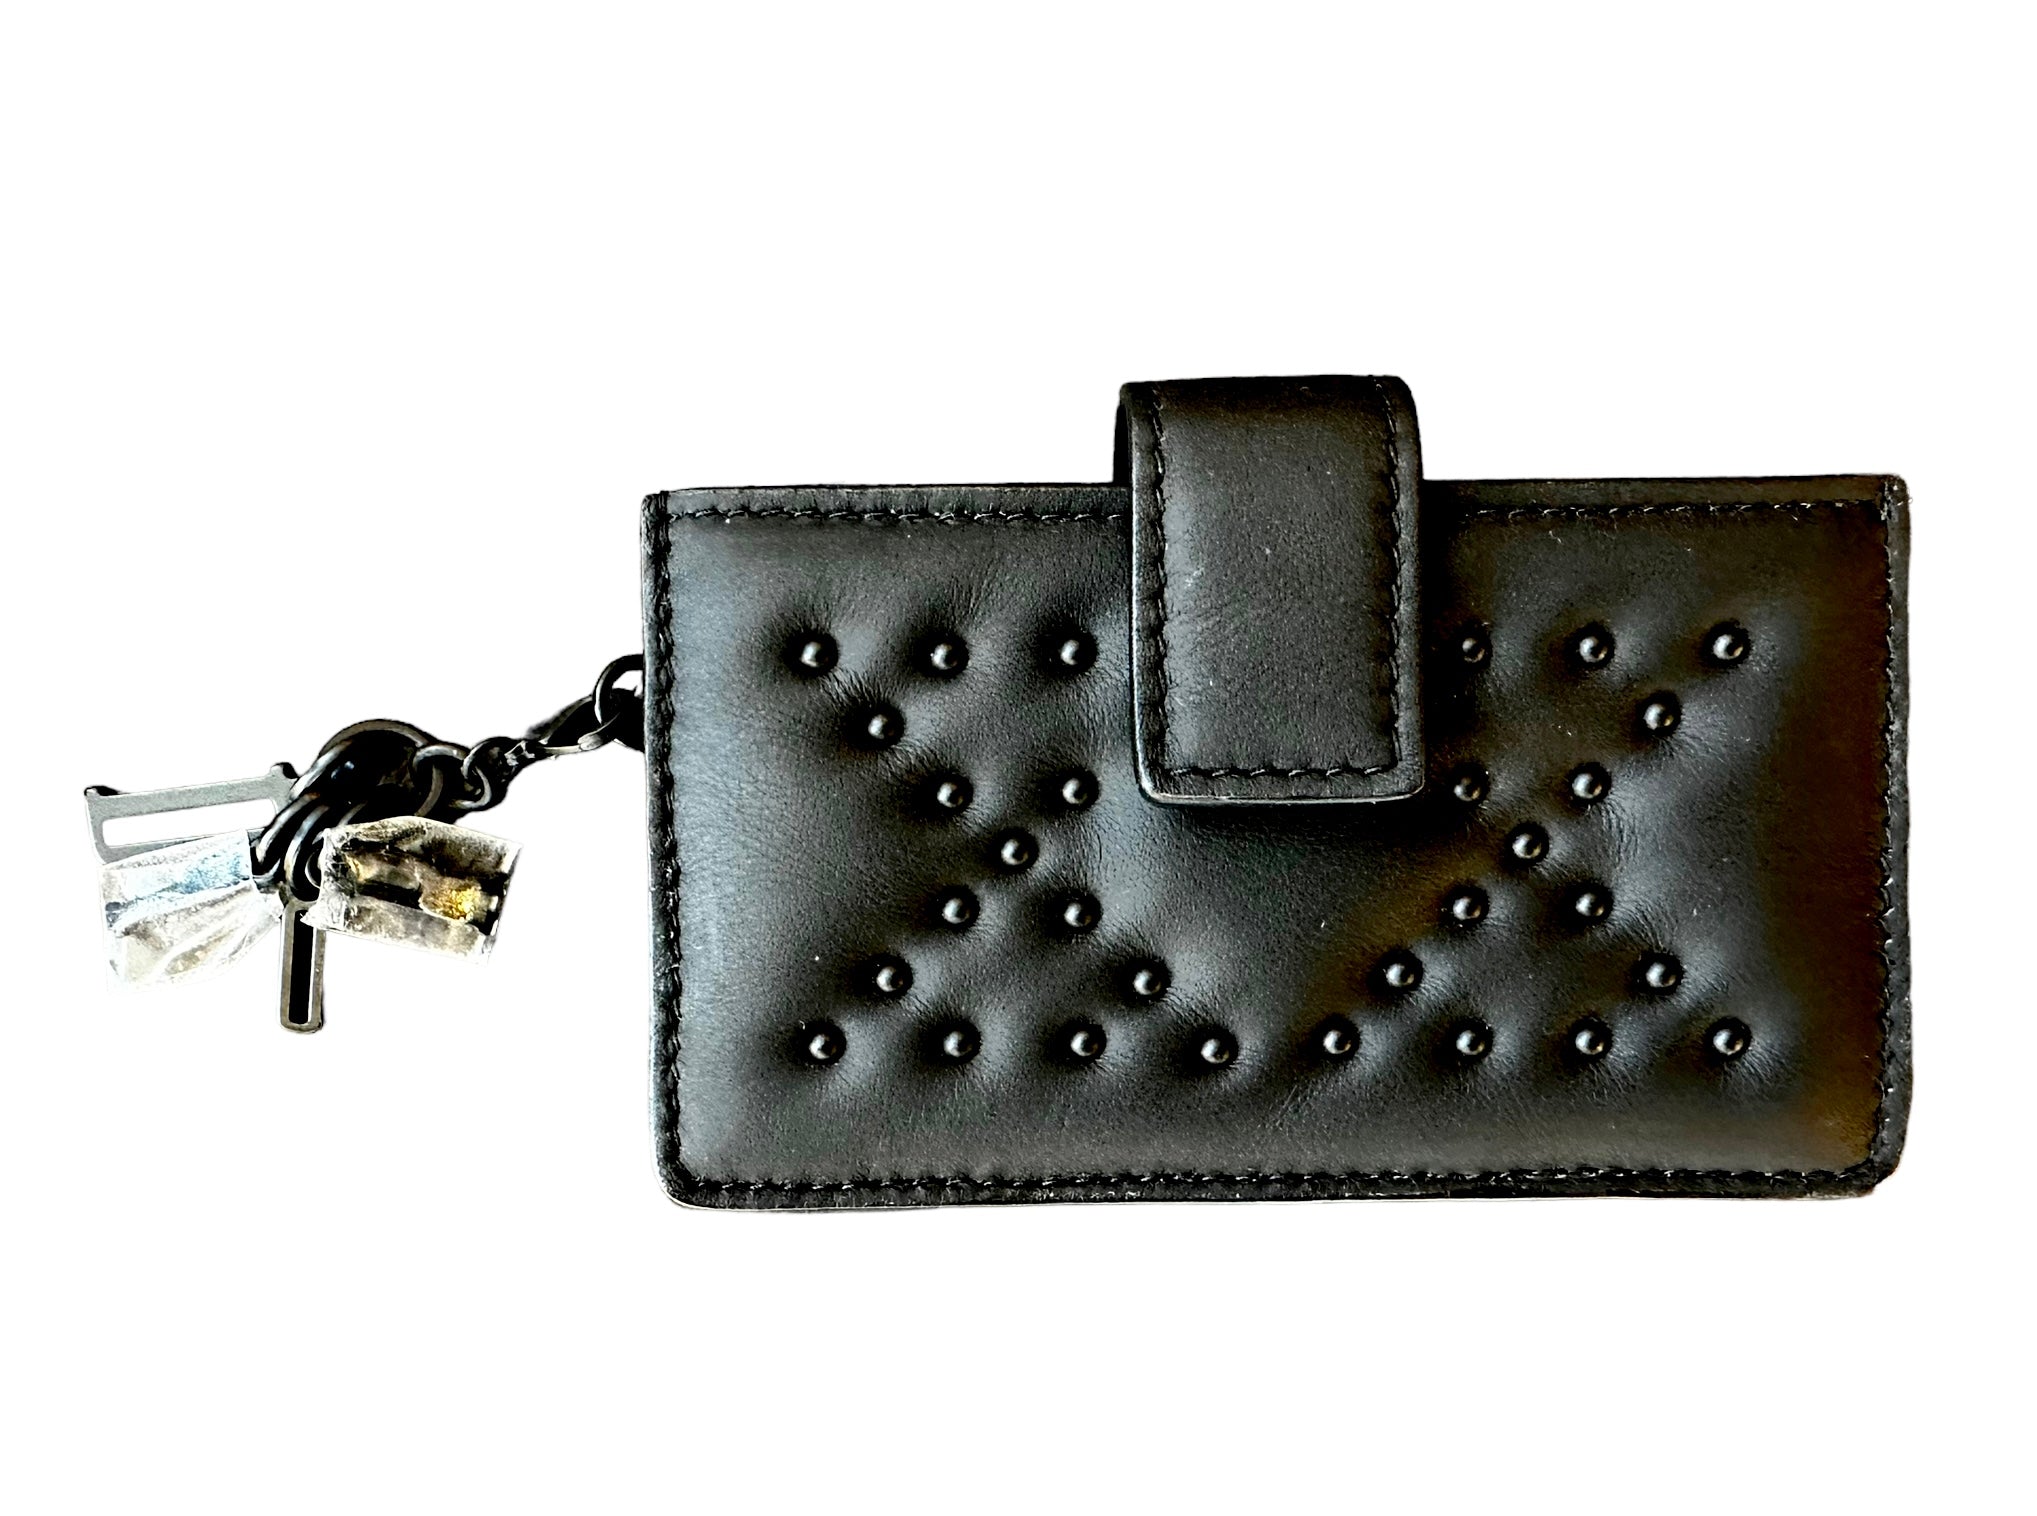 Dior Ultra-Matte Black Studded Card Holder – The Bag Broker